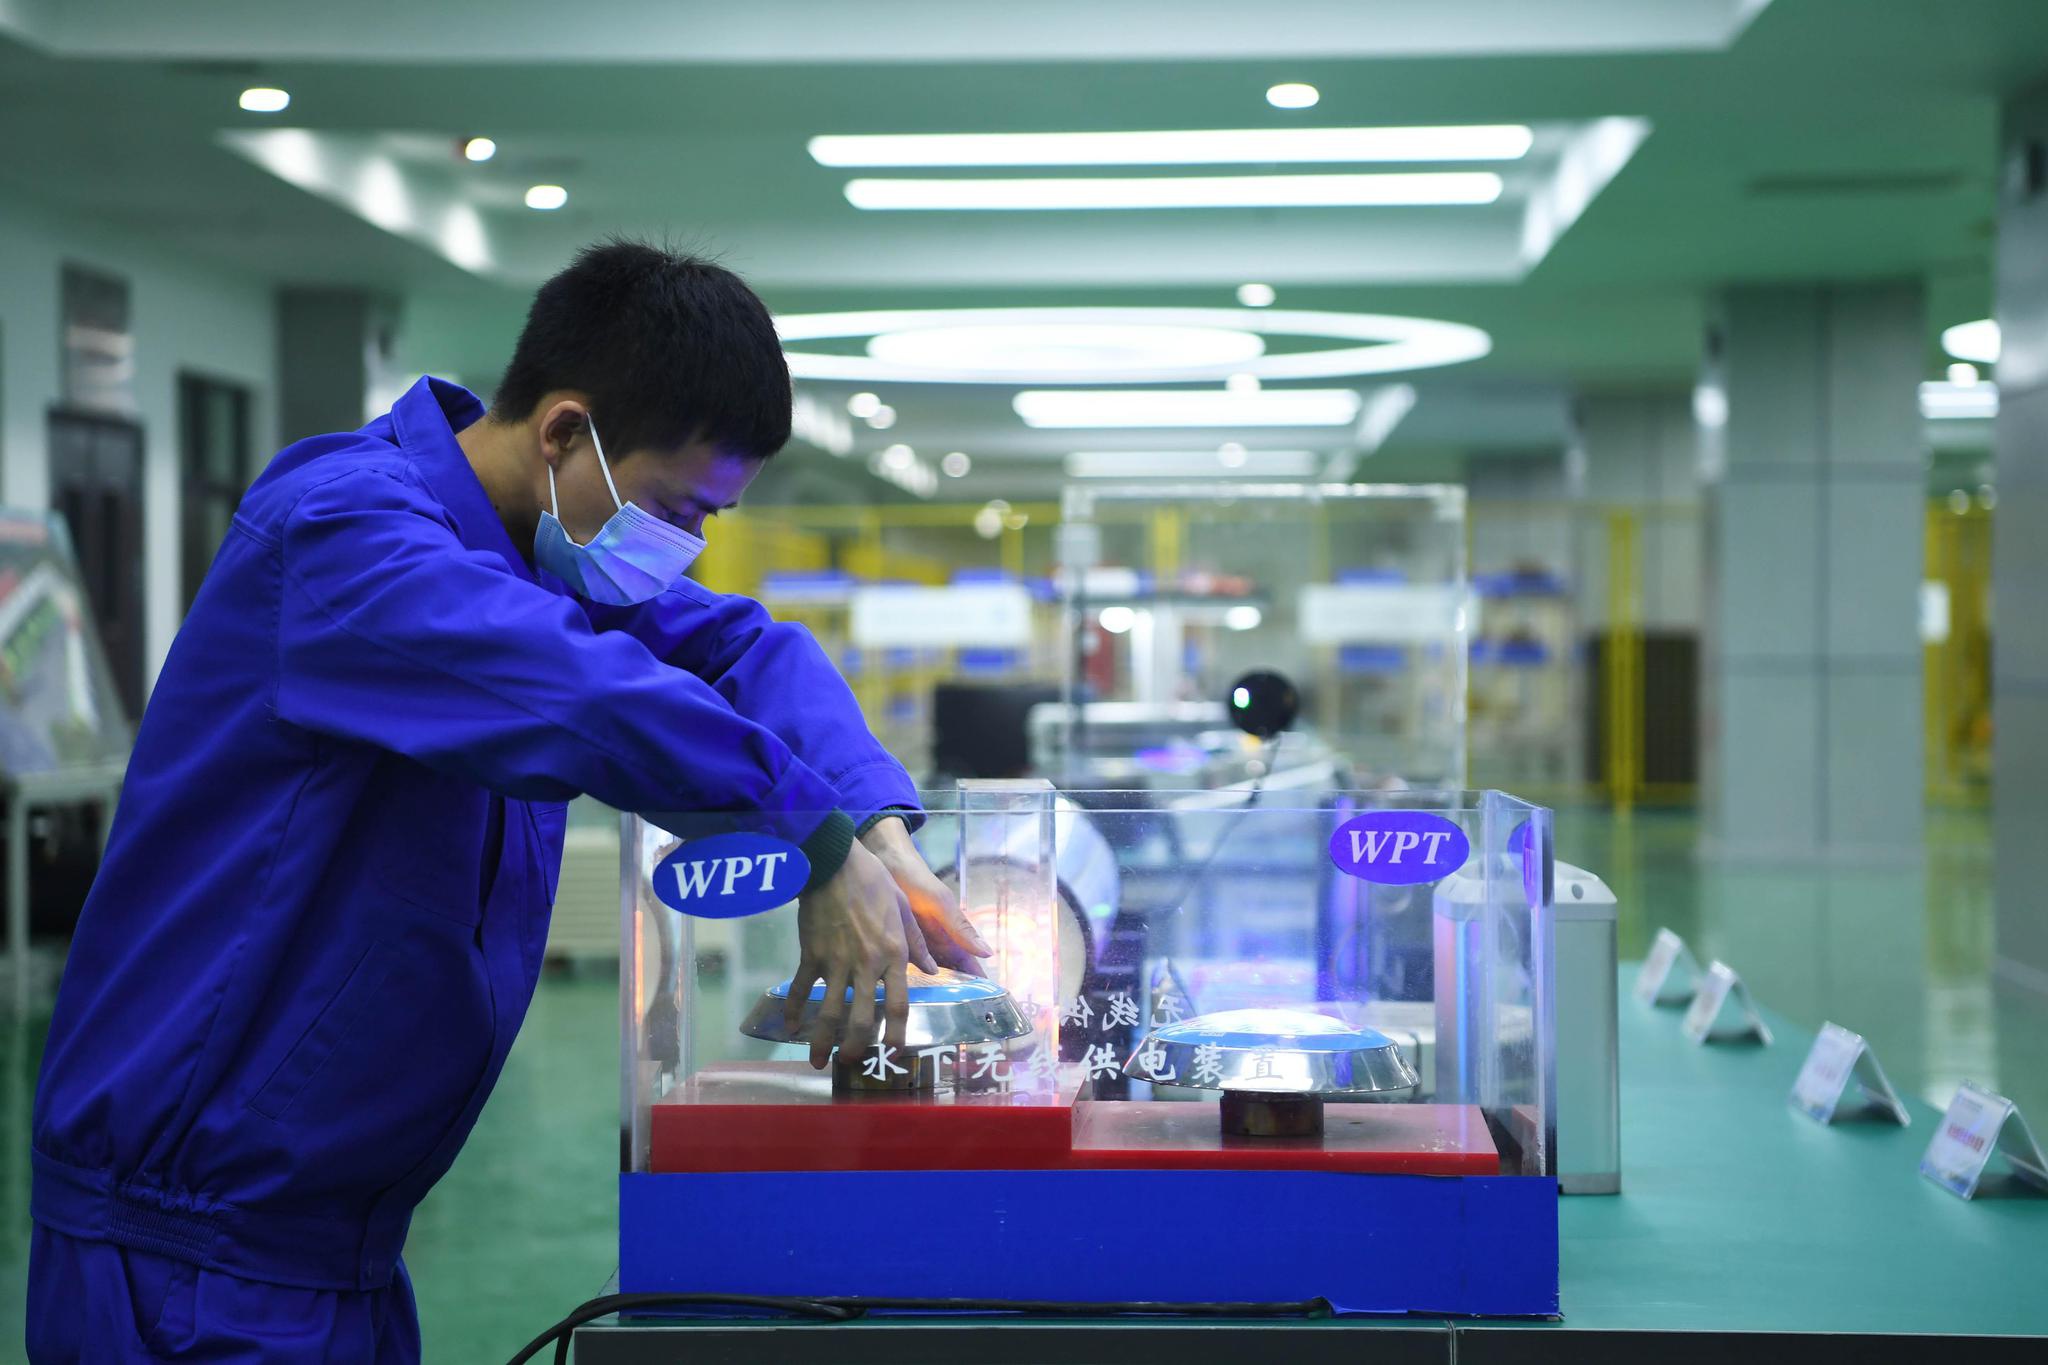 △重庆一科技企业的工作人员正在测试水下无线供电装置。